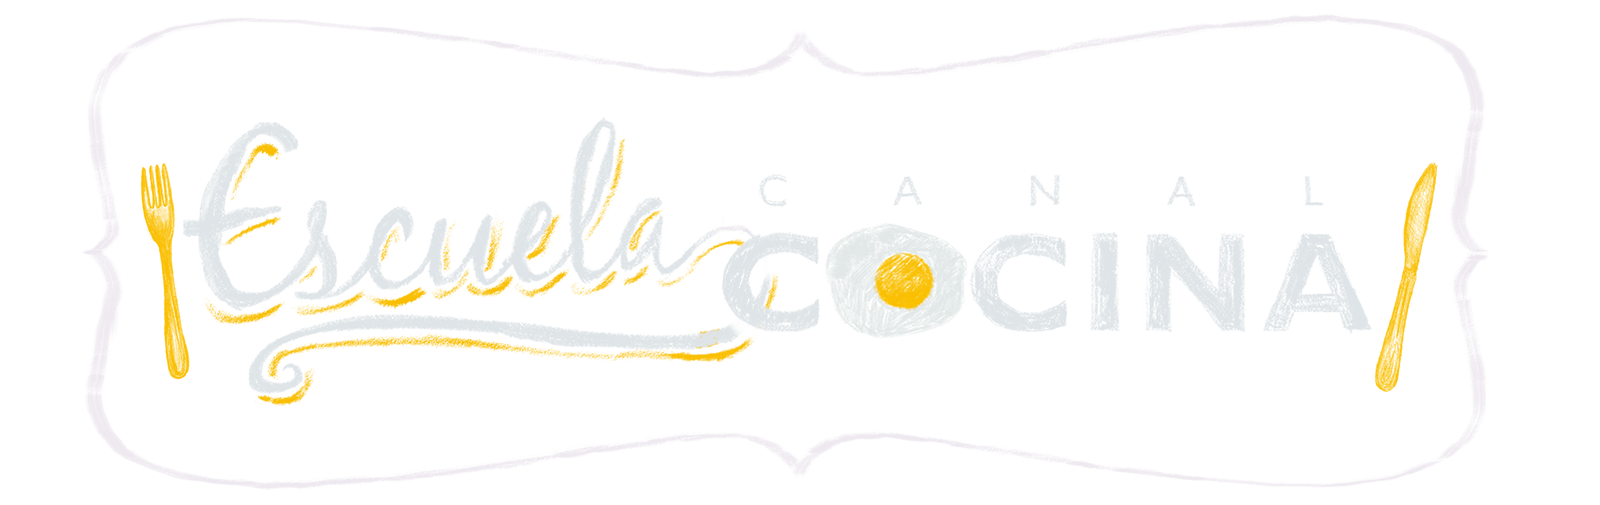 Escuela Canal Cocina T2